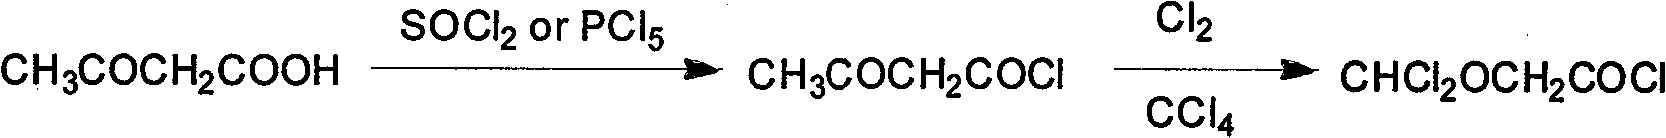 Synthesis method of isoflurane